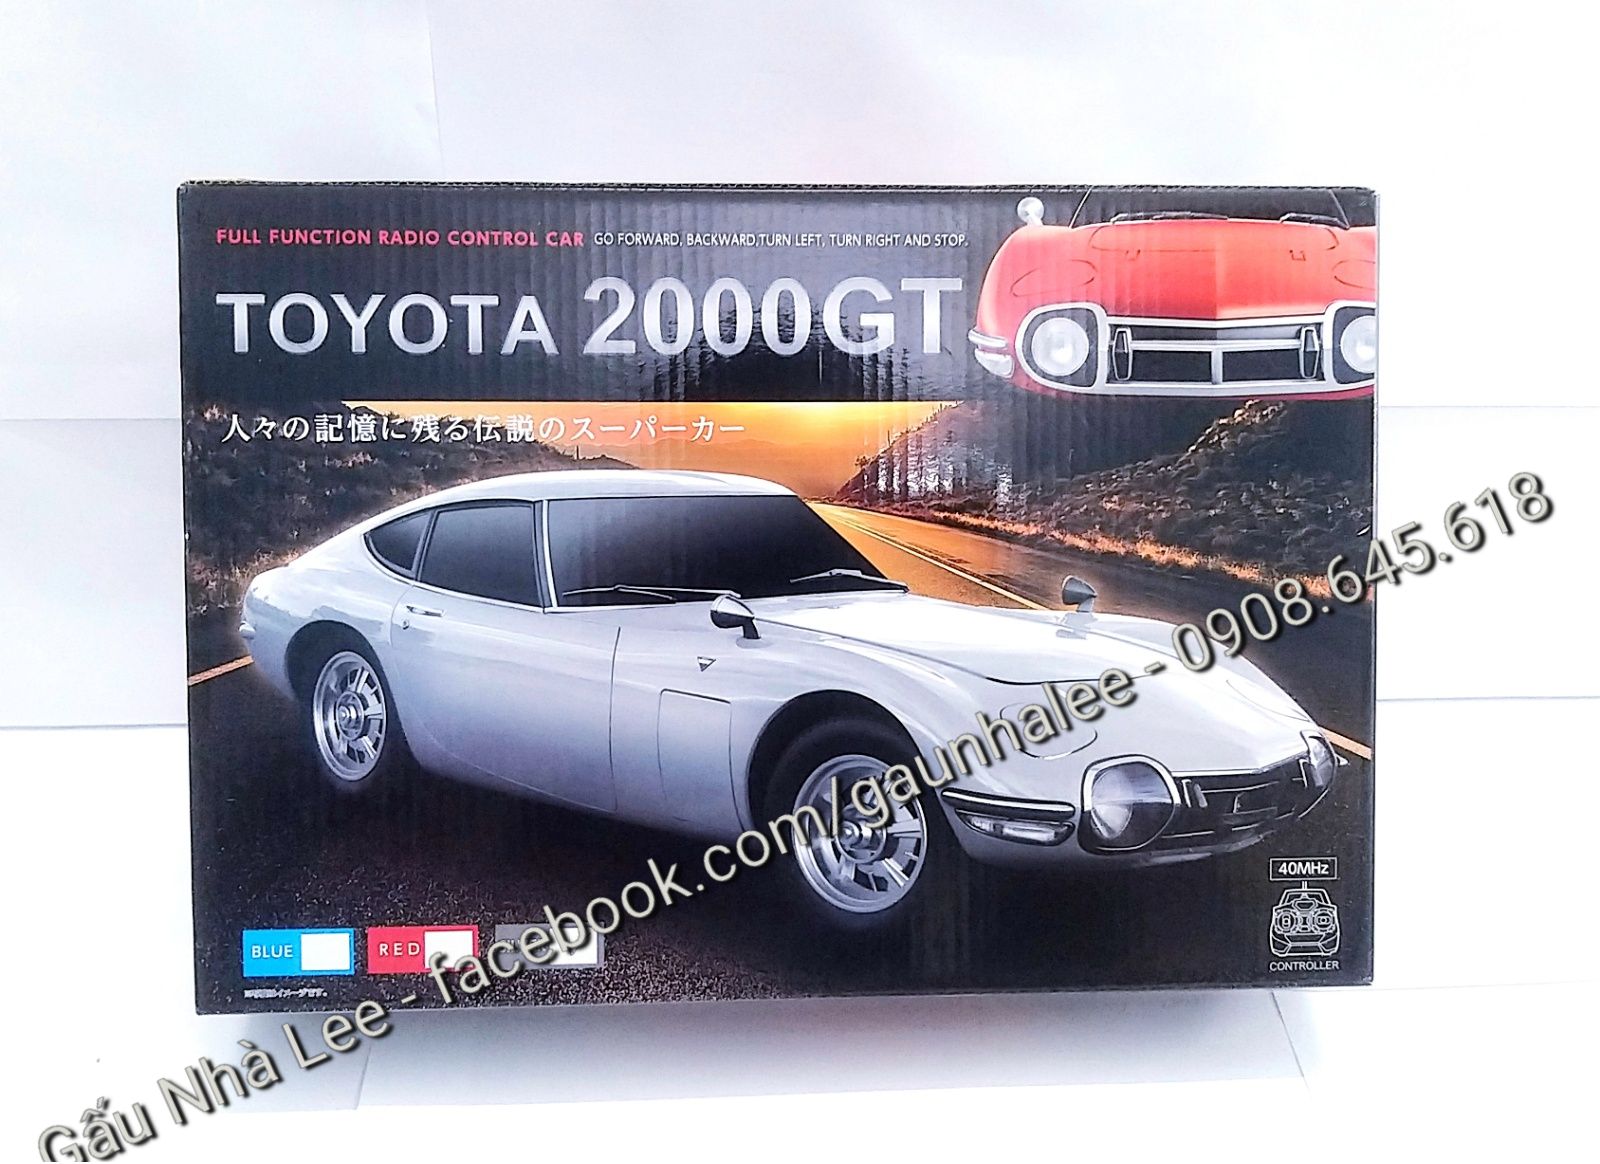 Khám phá thông tin về dòng xe Toyota Corolla 2000 được bán tại Việt Nam   HackMD